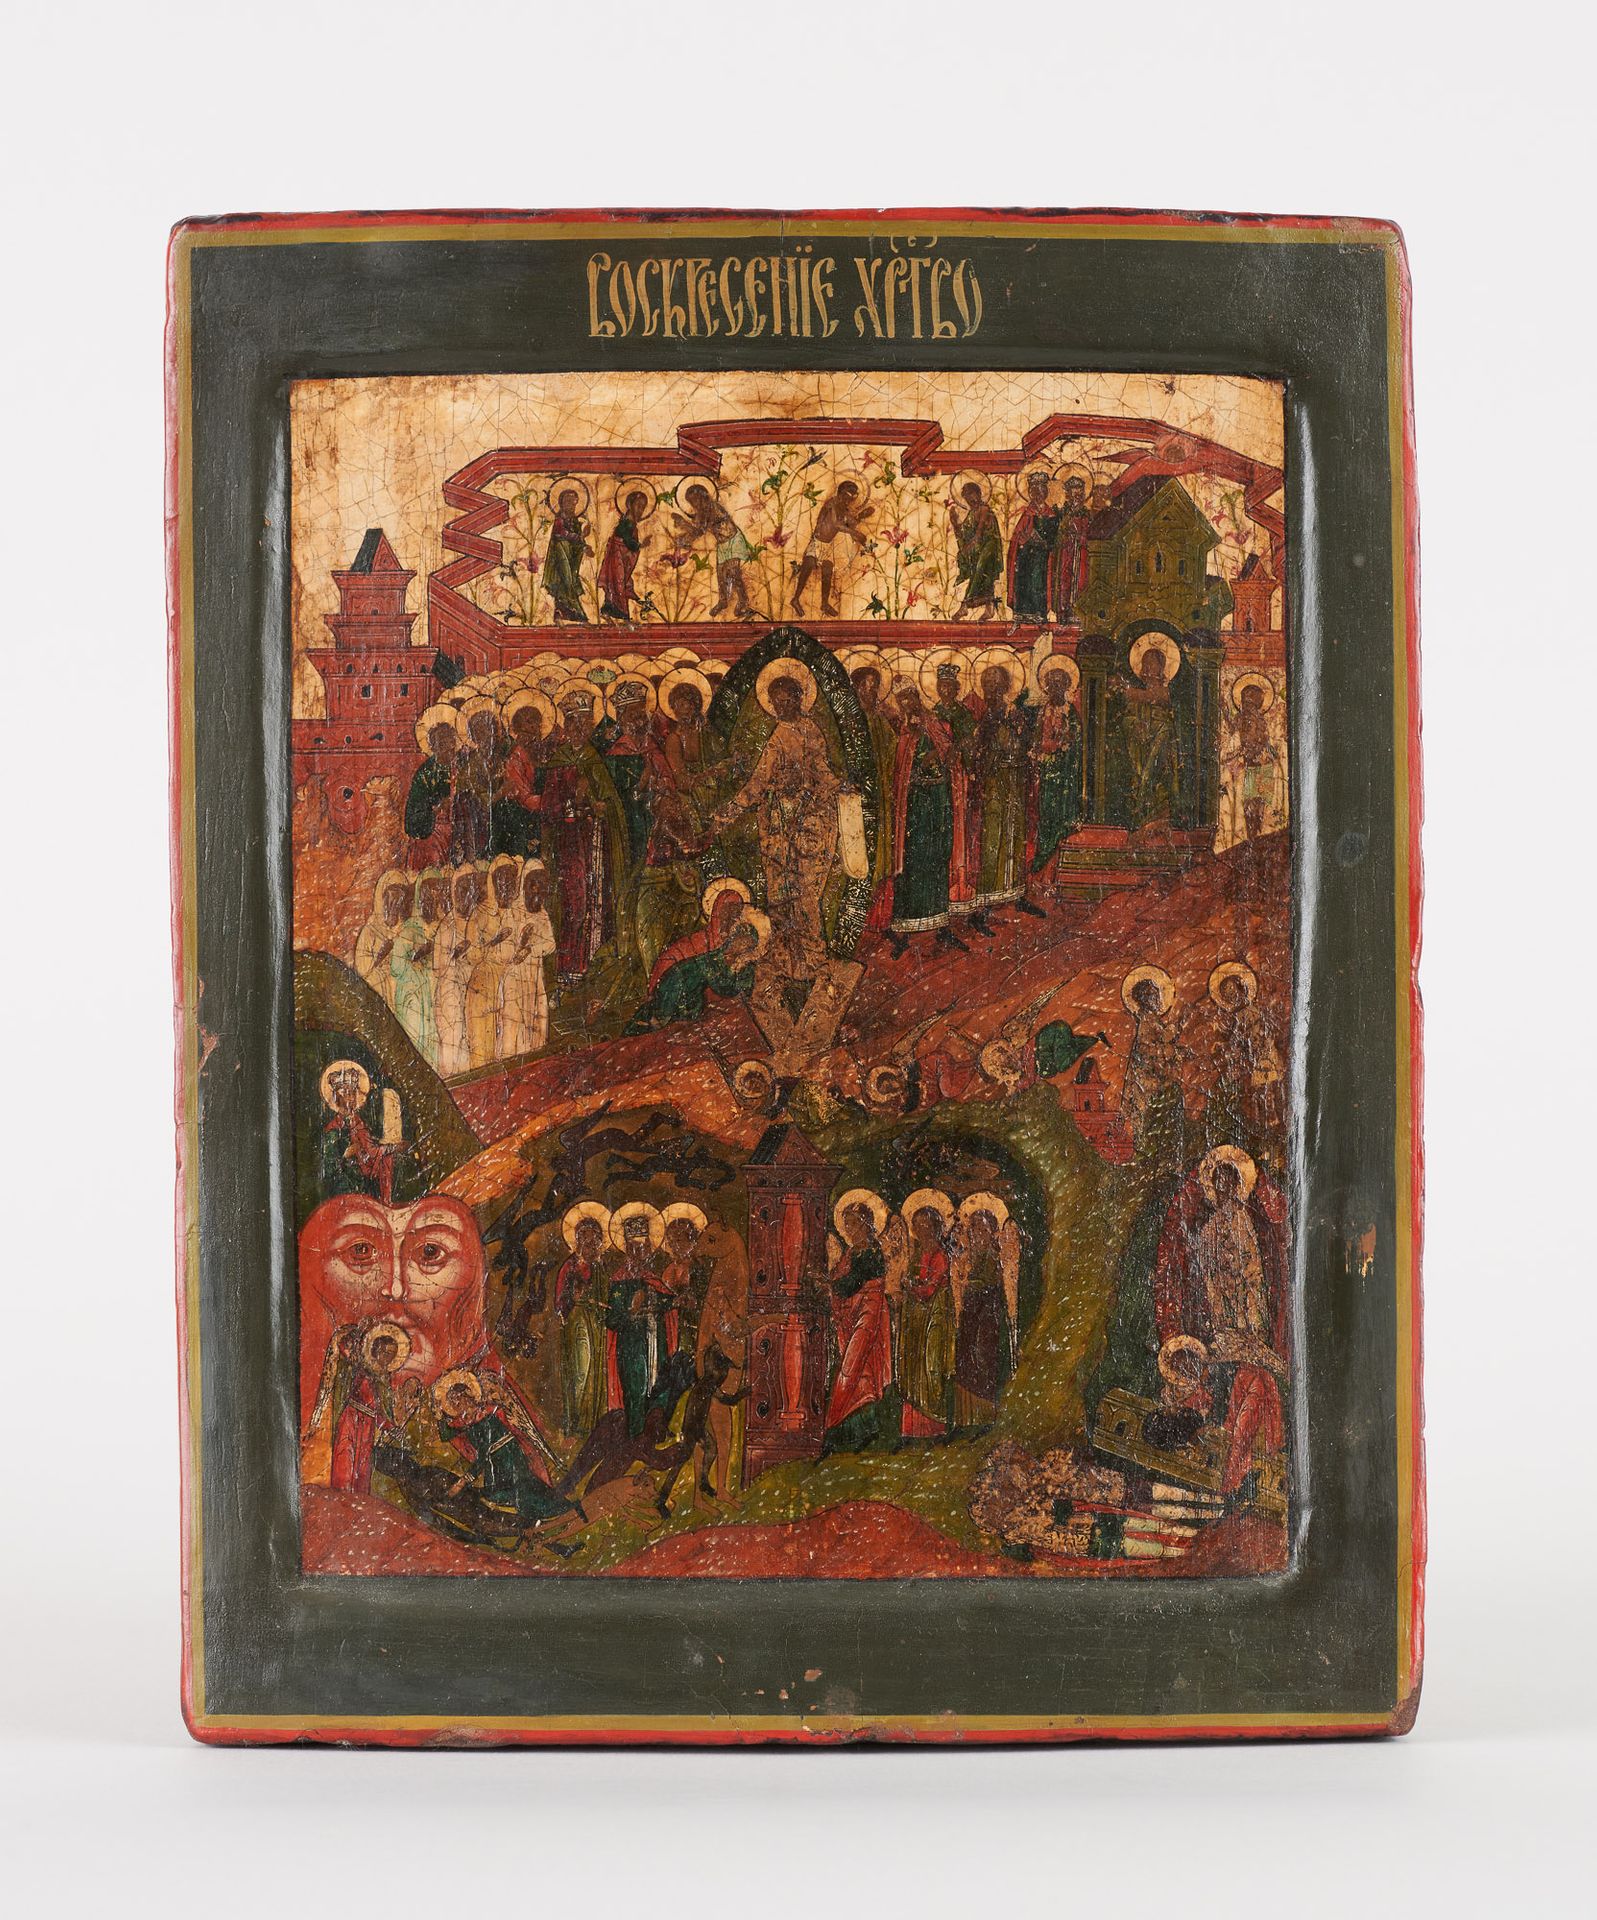 Travail russe. Icône sur bois: La résurrection du Christ.

Dim.: 29 x 24 cm.